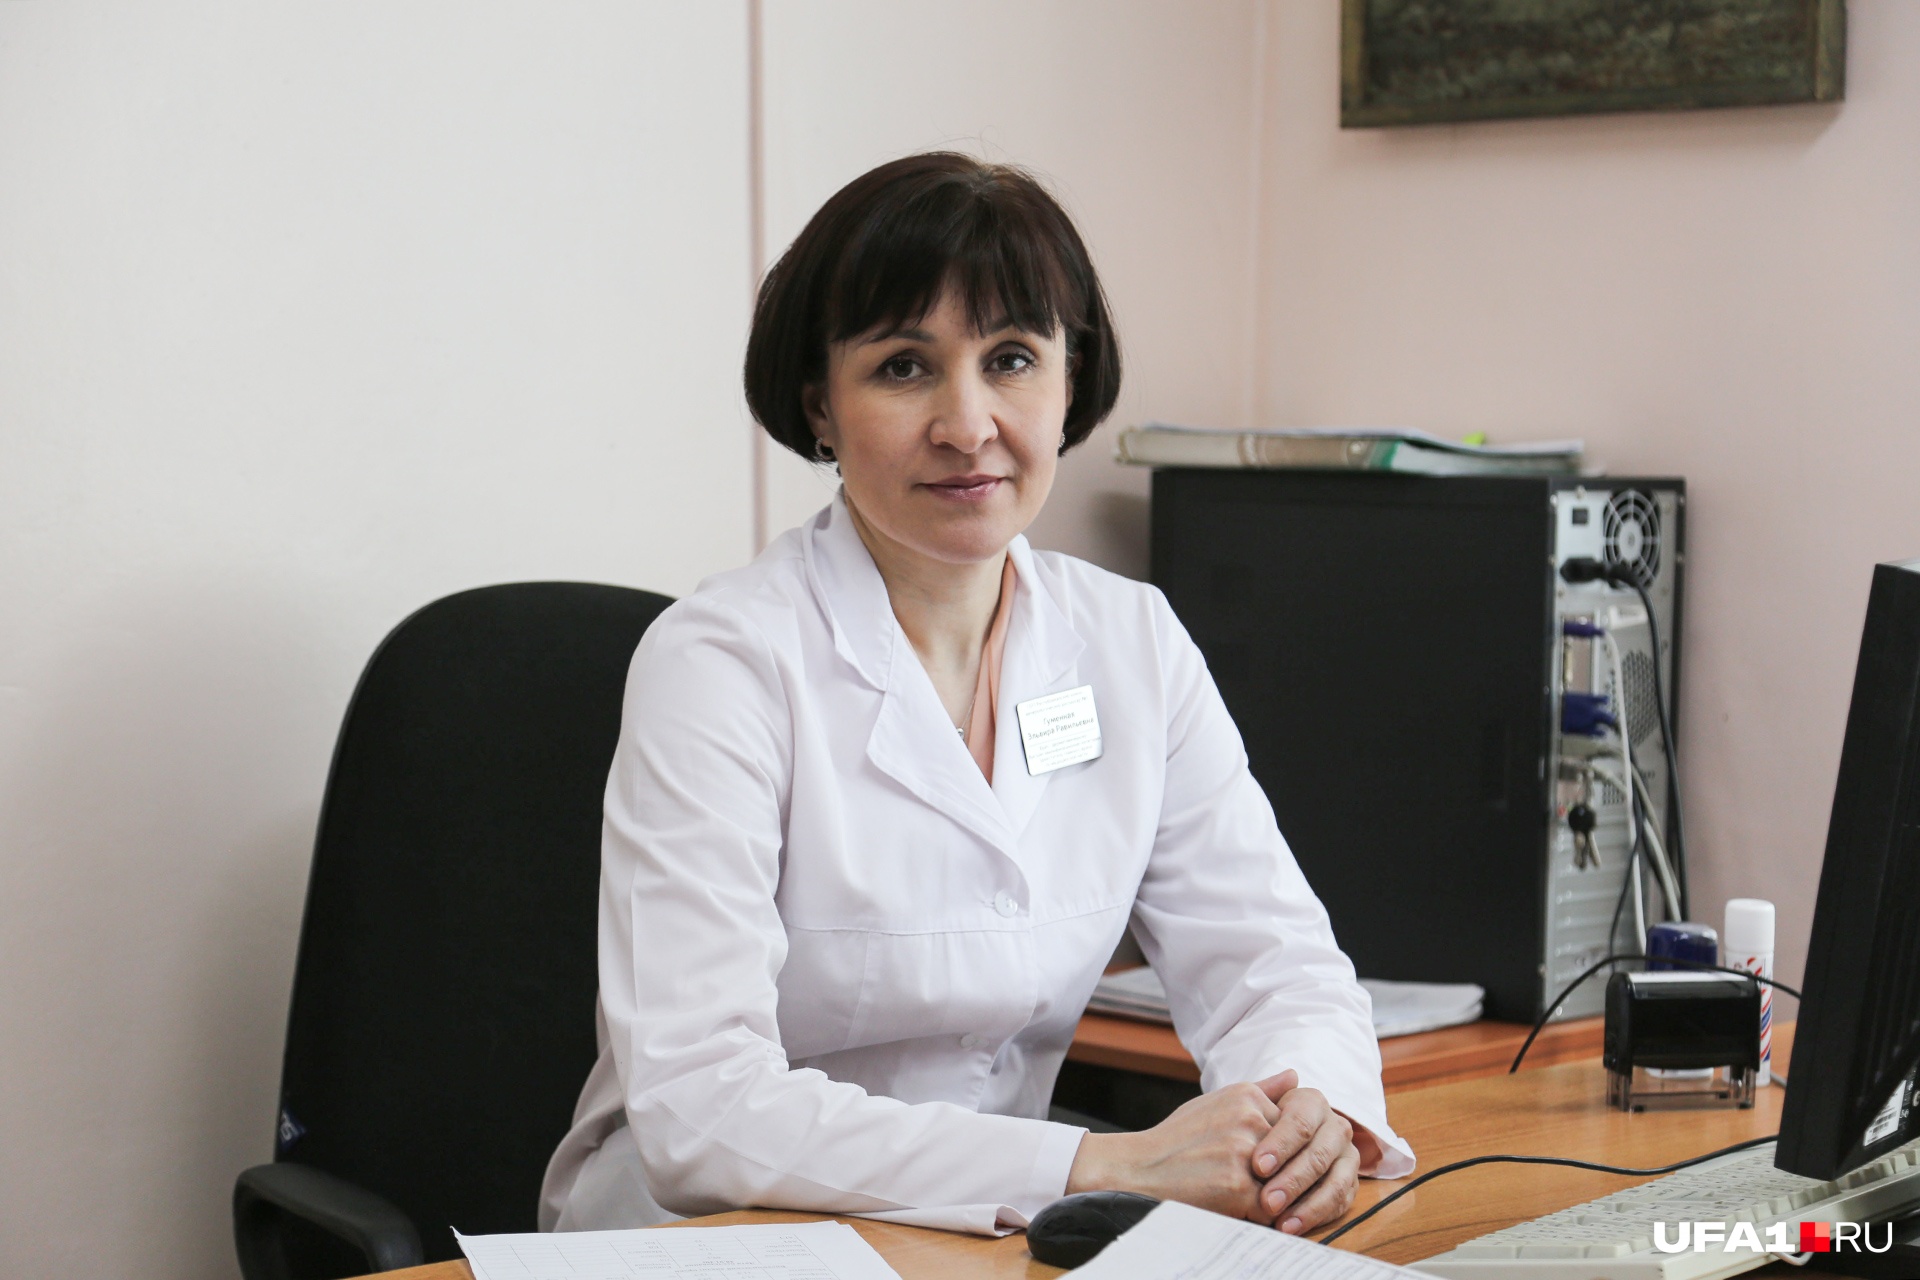 Эльвира Гуменная является одним из ведущих венерологов Башкирии 